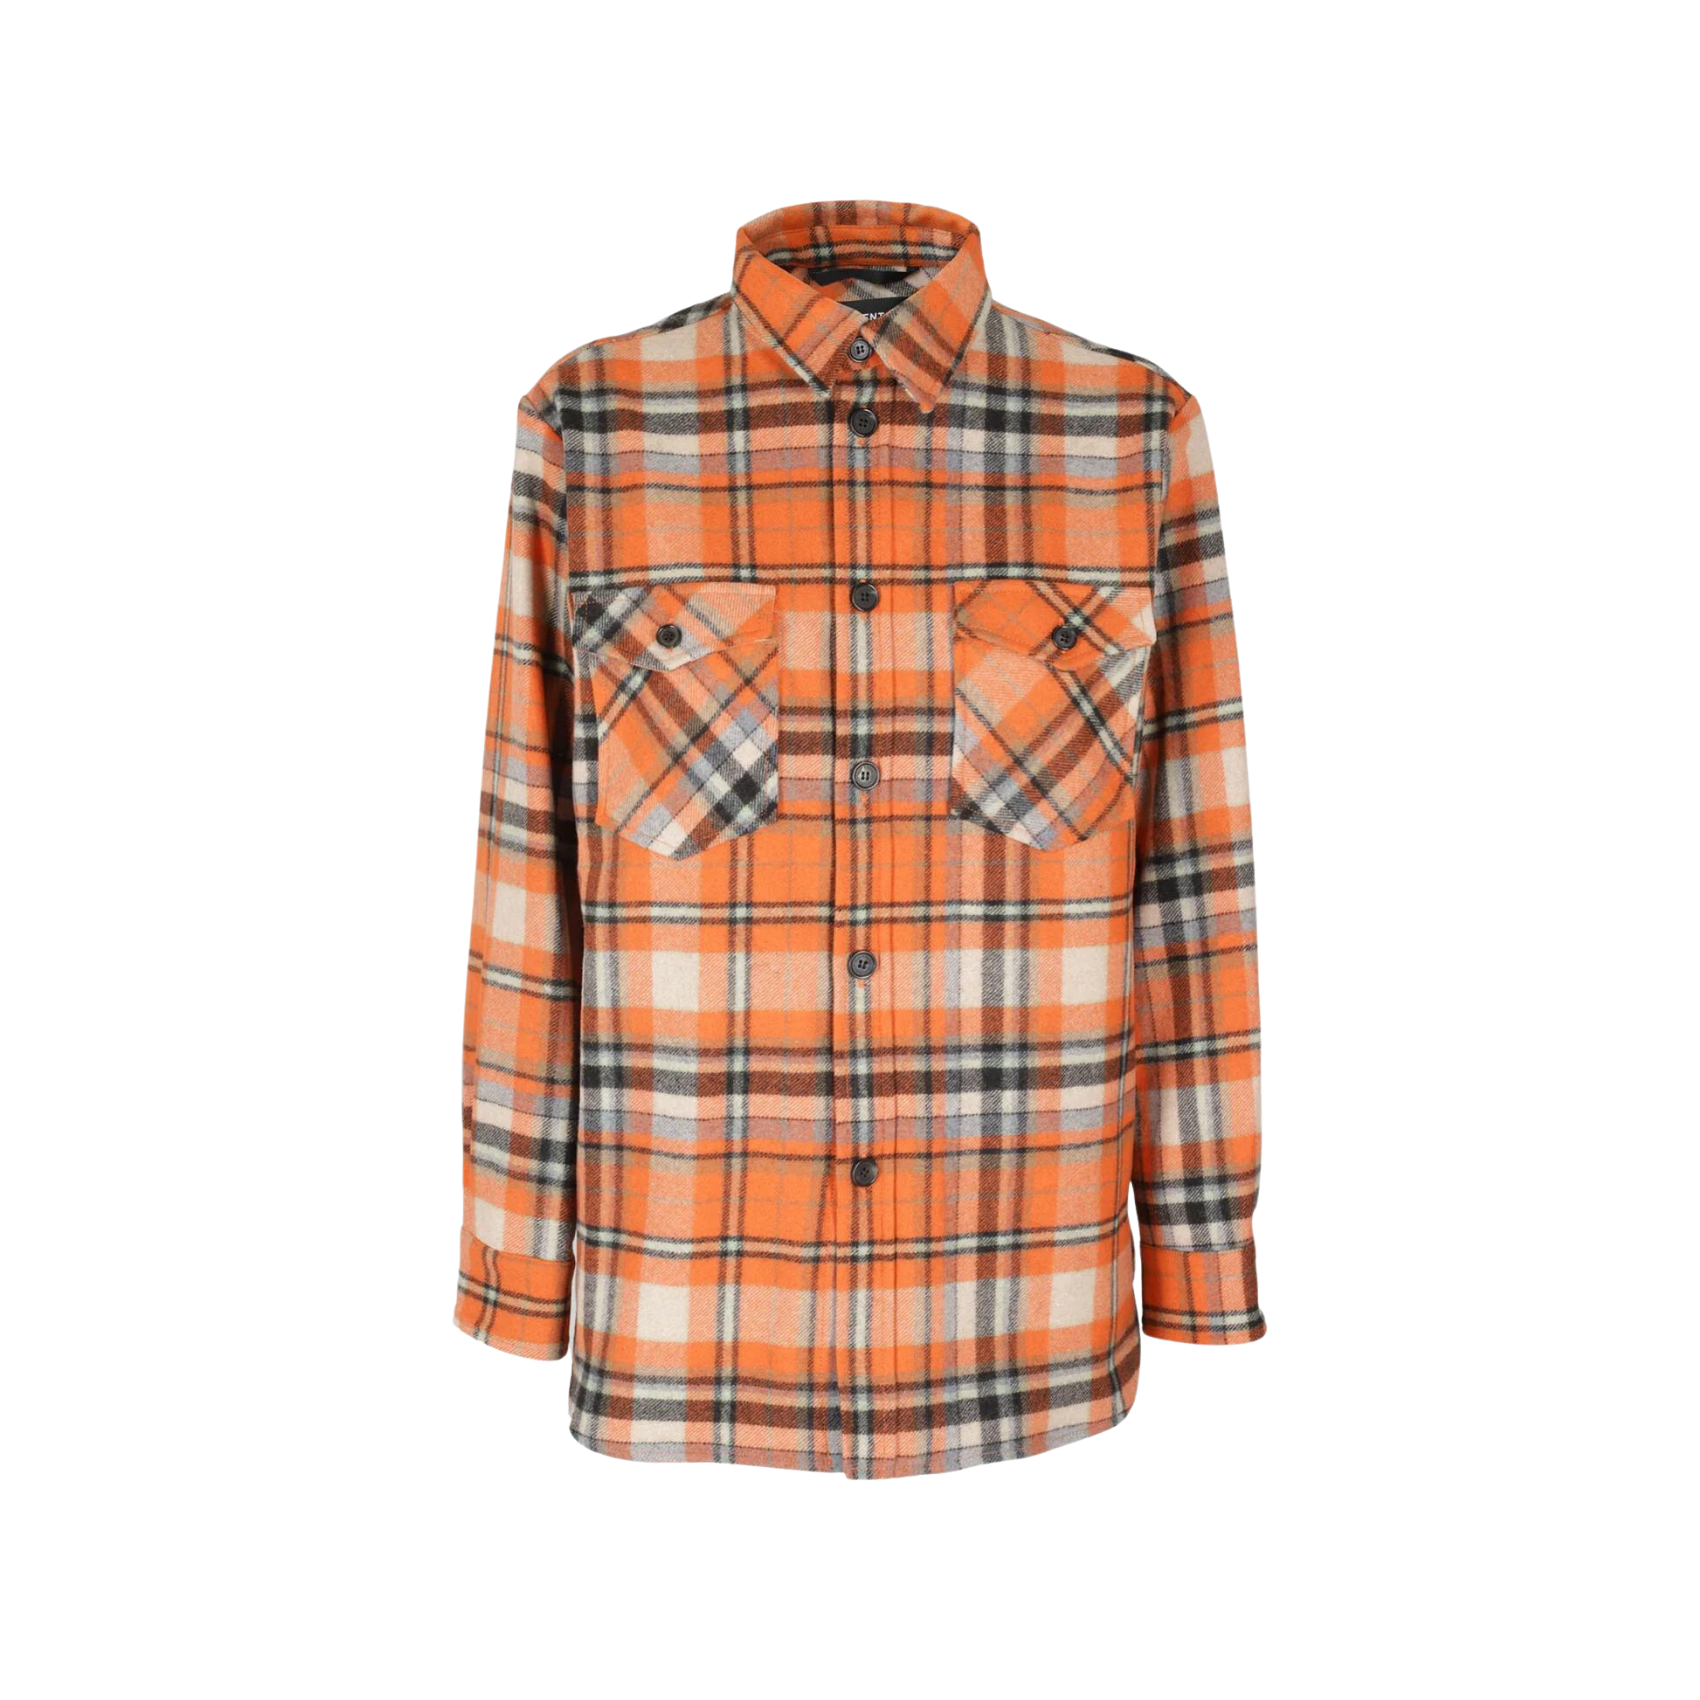 Janis Jacket Shirt - Orange